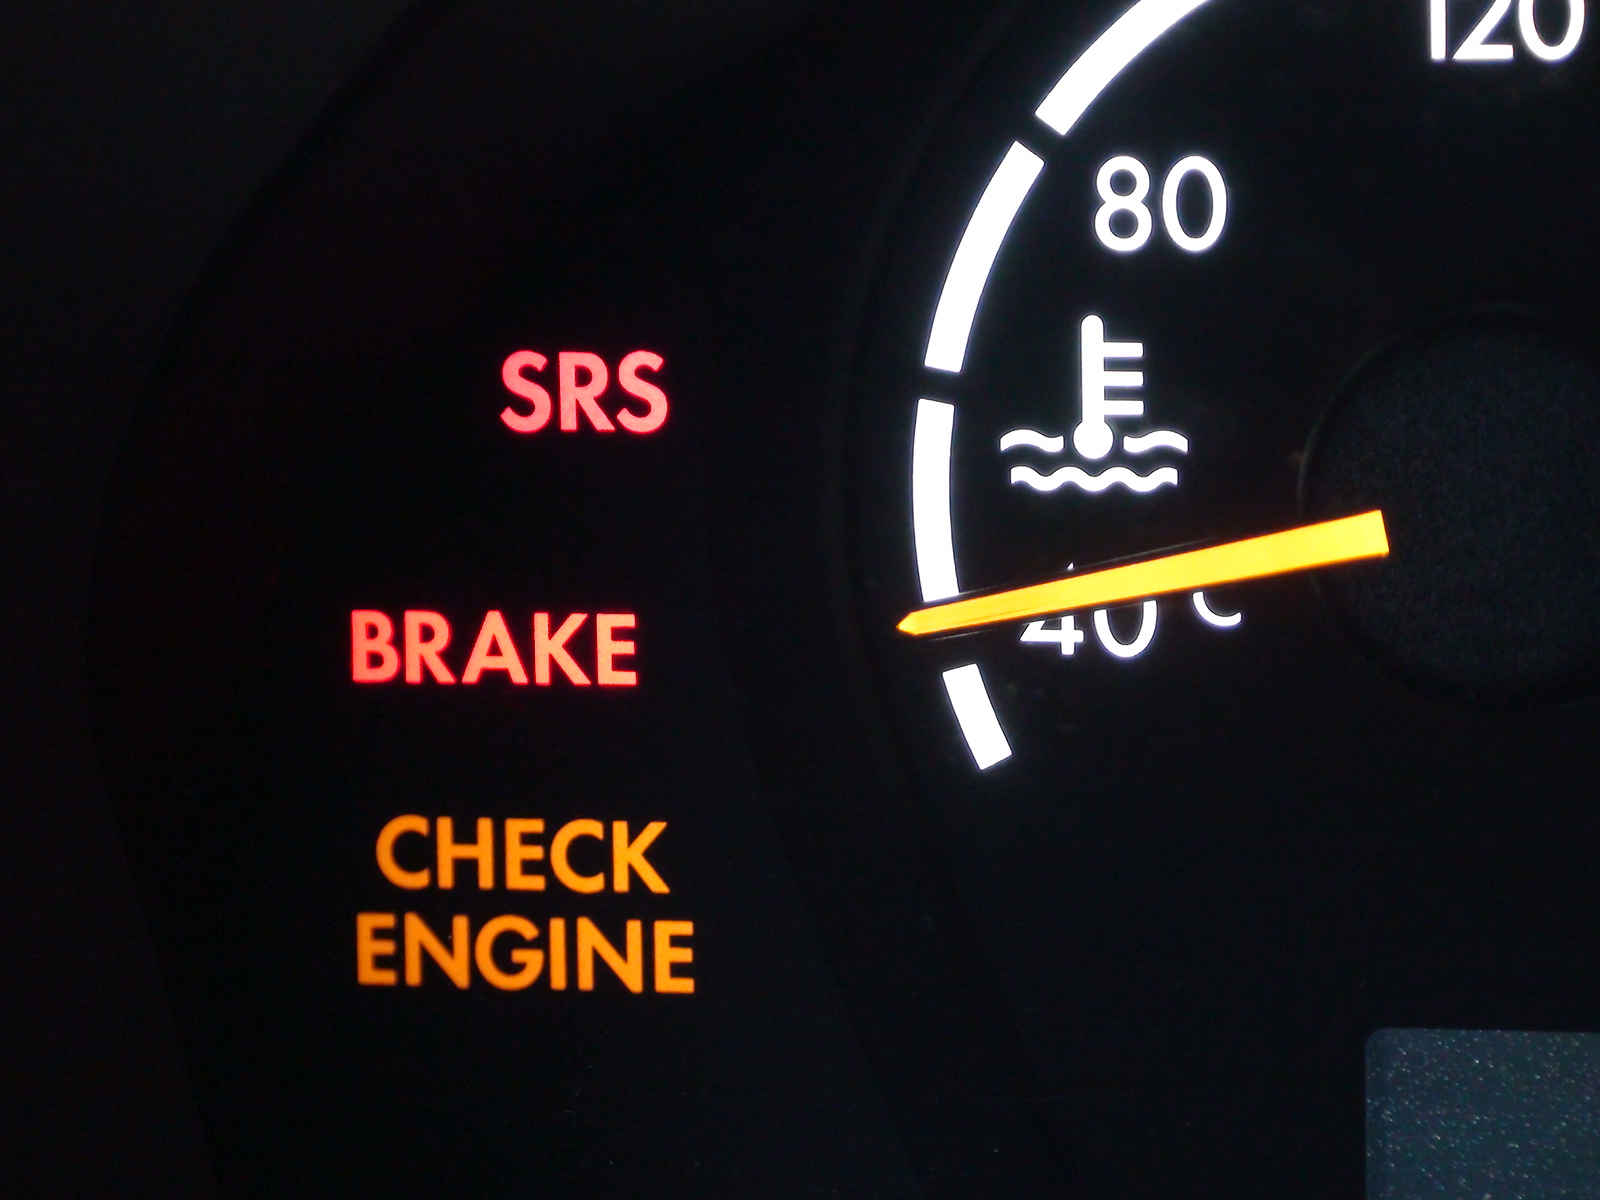 Загорелся чек двигателя: причины и способы, как погасить индикатор check engine